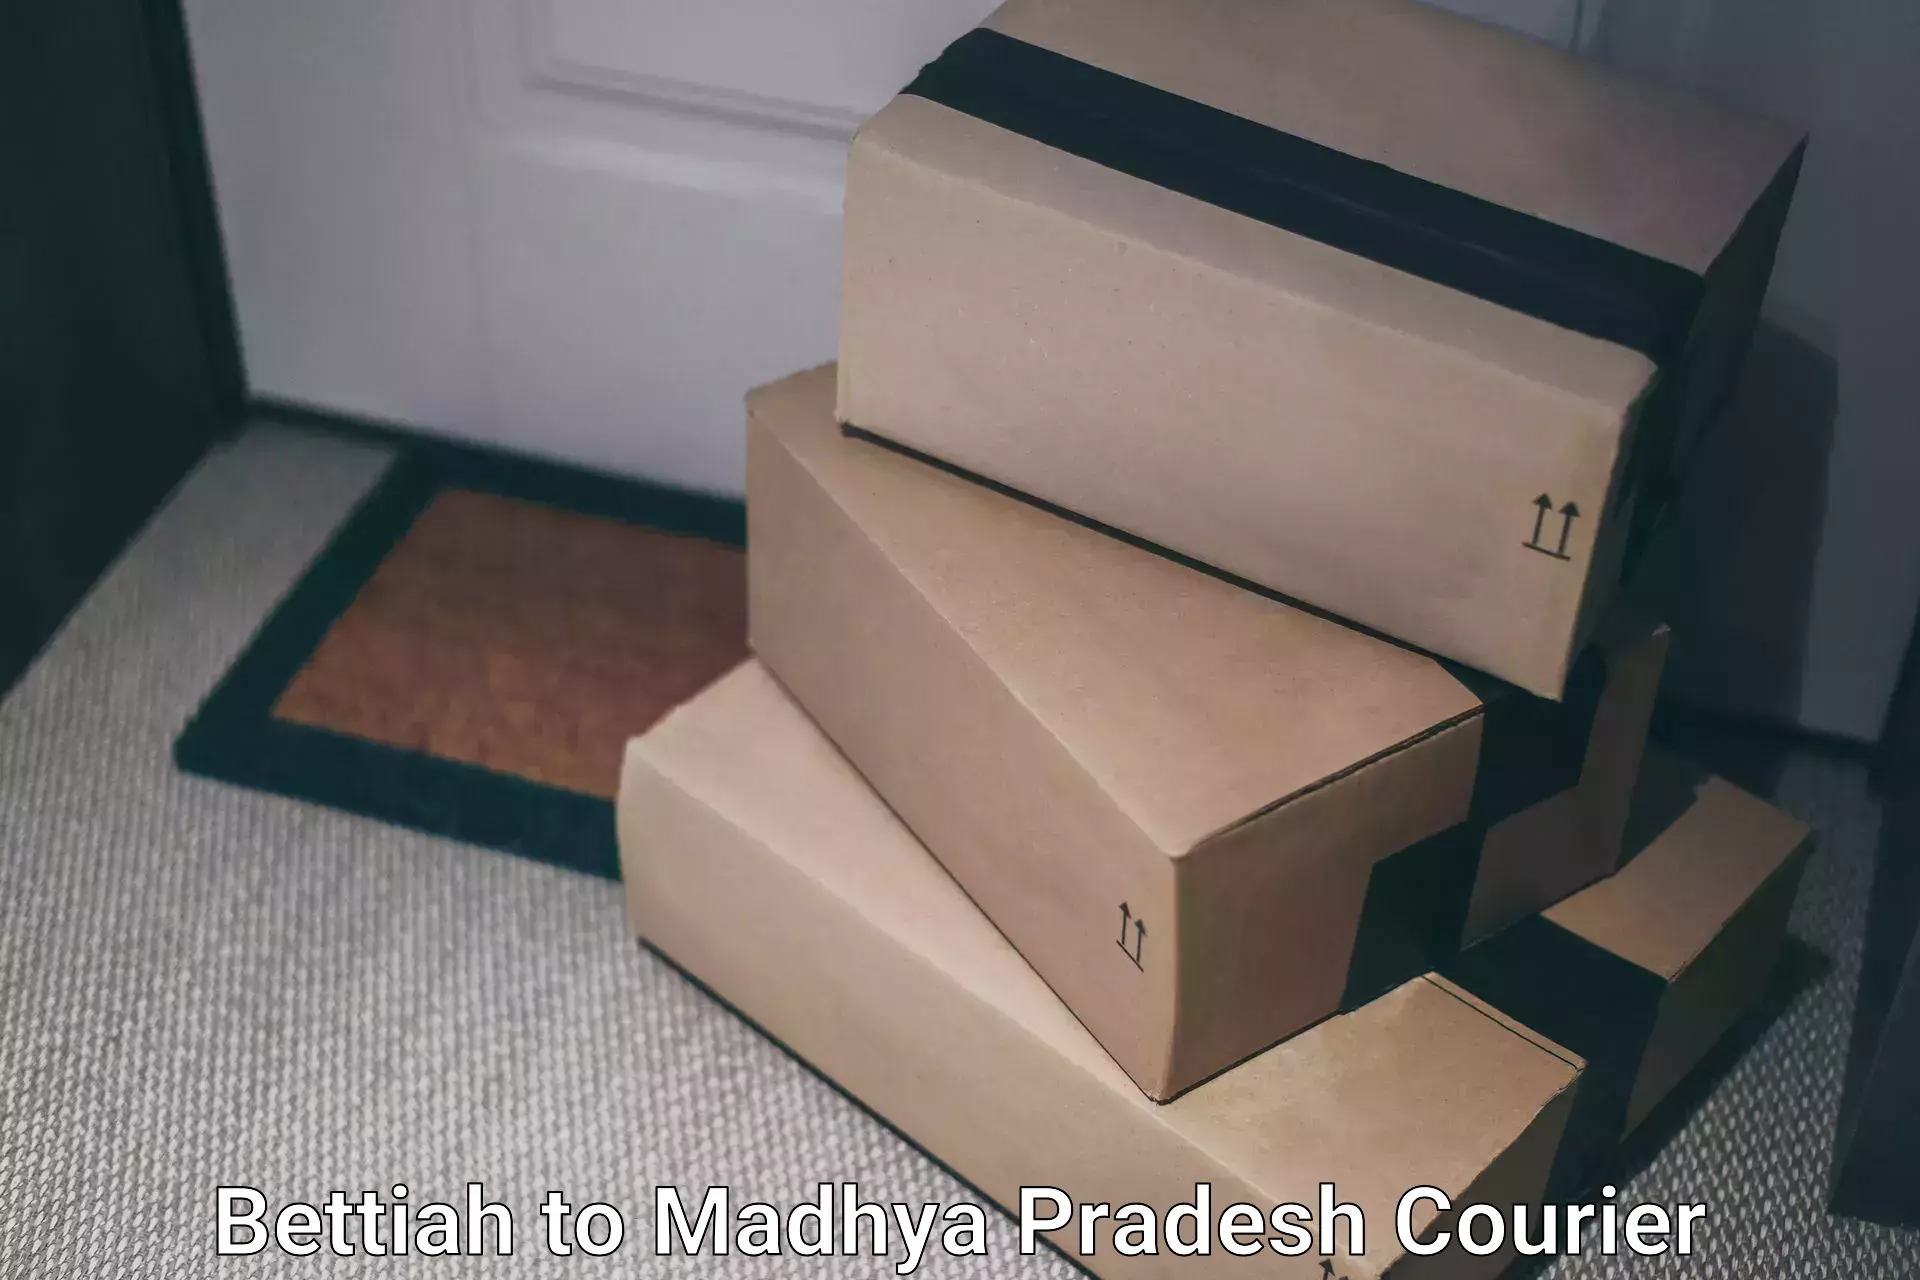 Courier app Bettiah to Madhya Pradesh